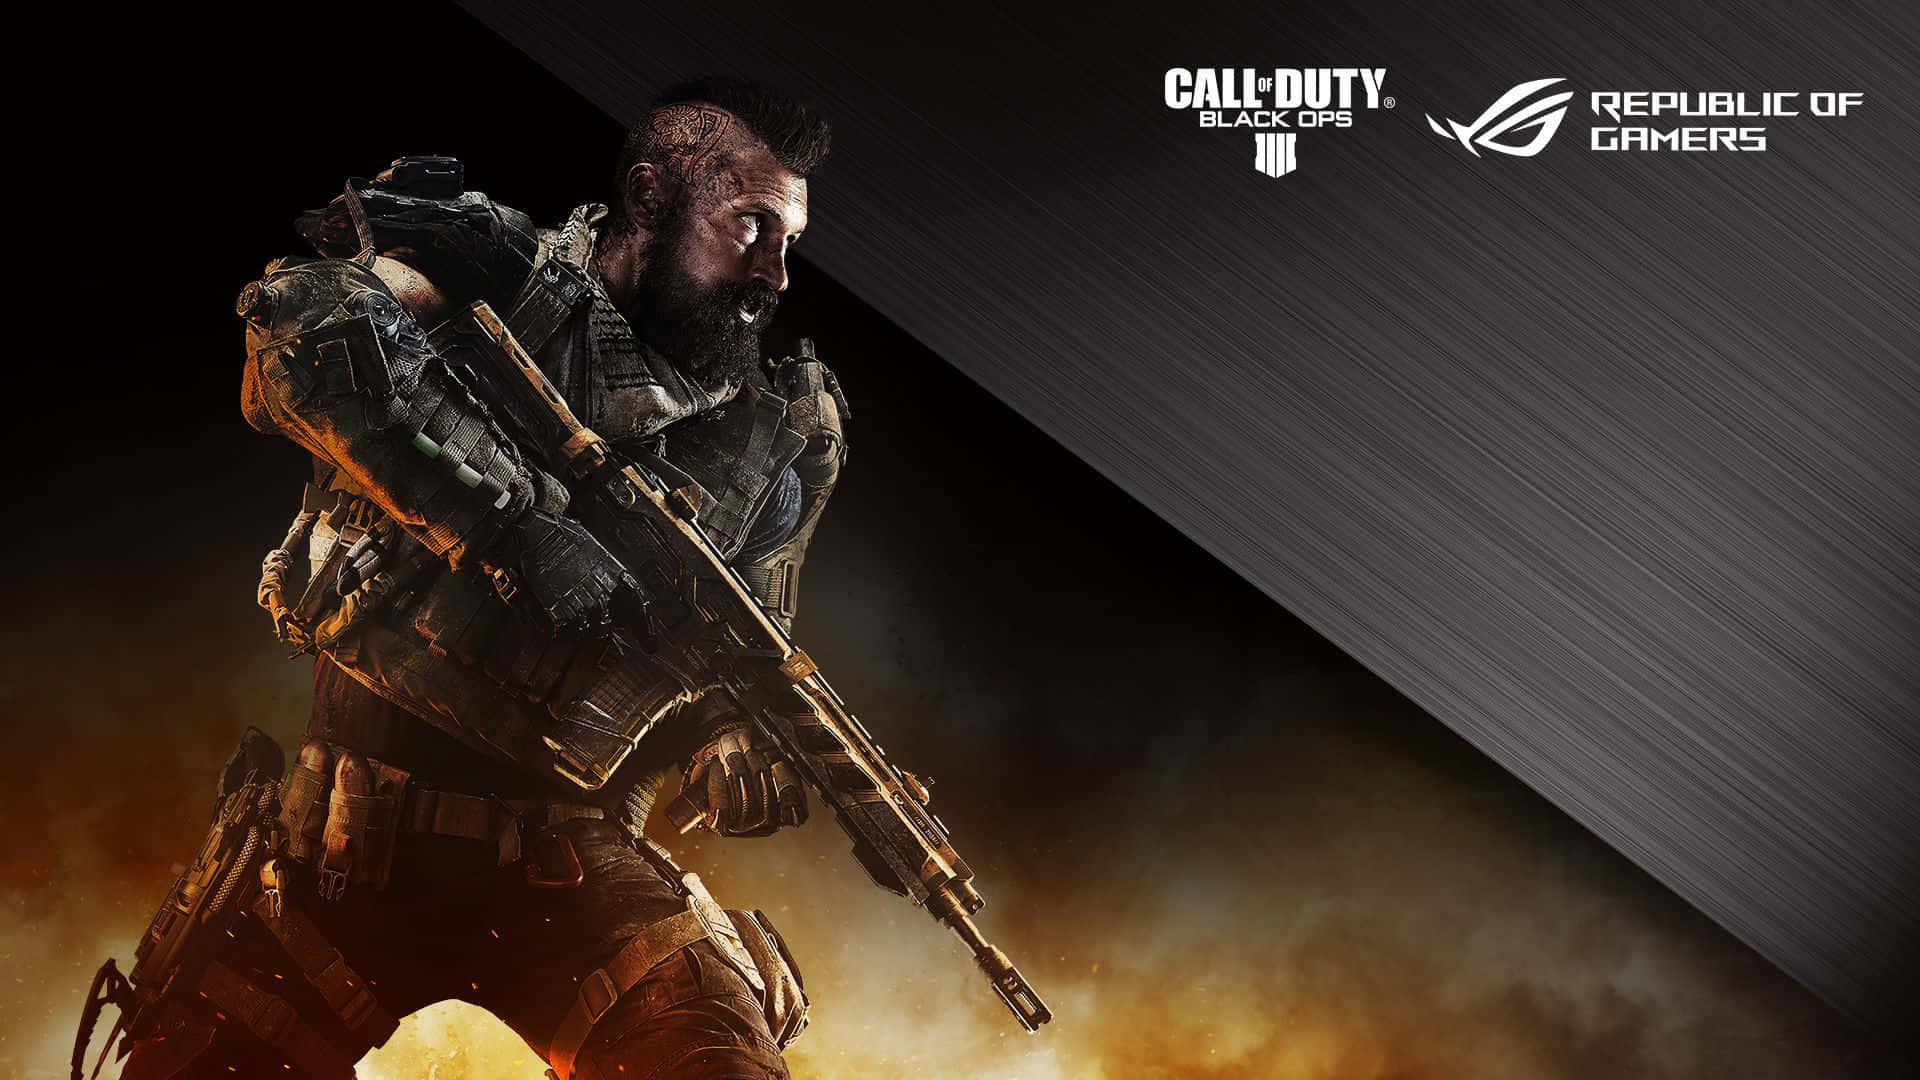 Vis dine sande farver med den seneste udgave af Call Of Duty: Black Ops 4.